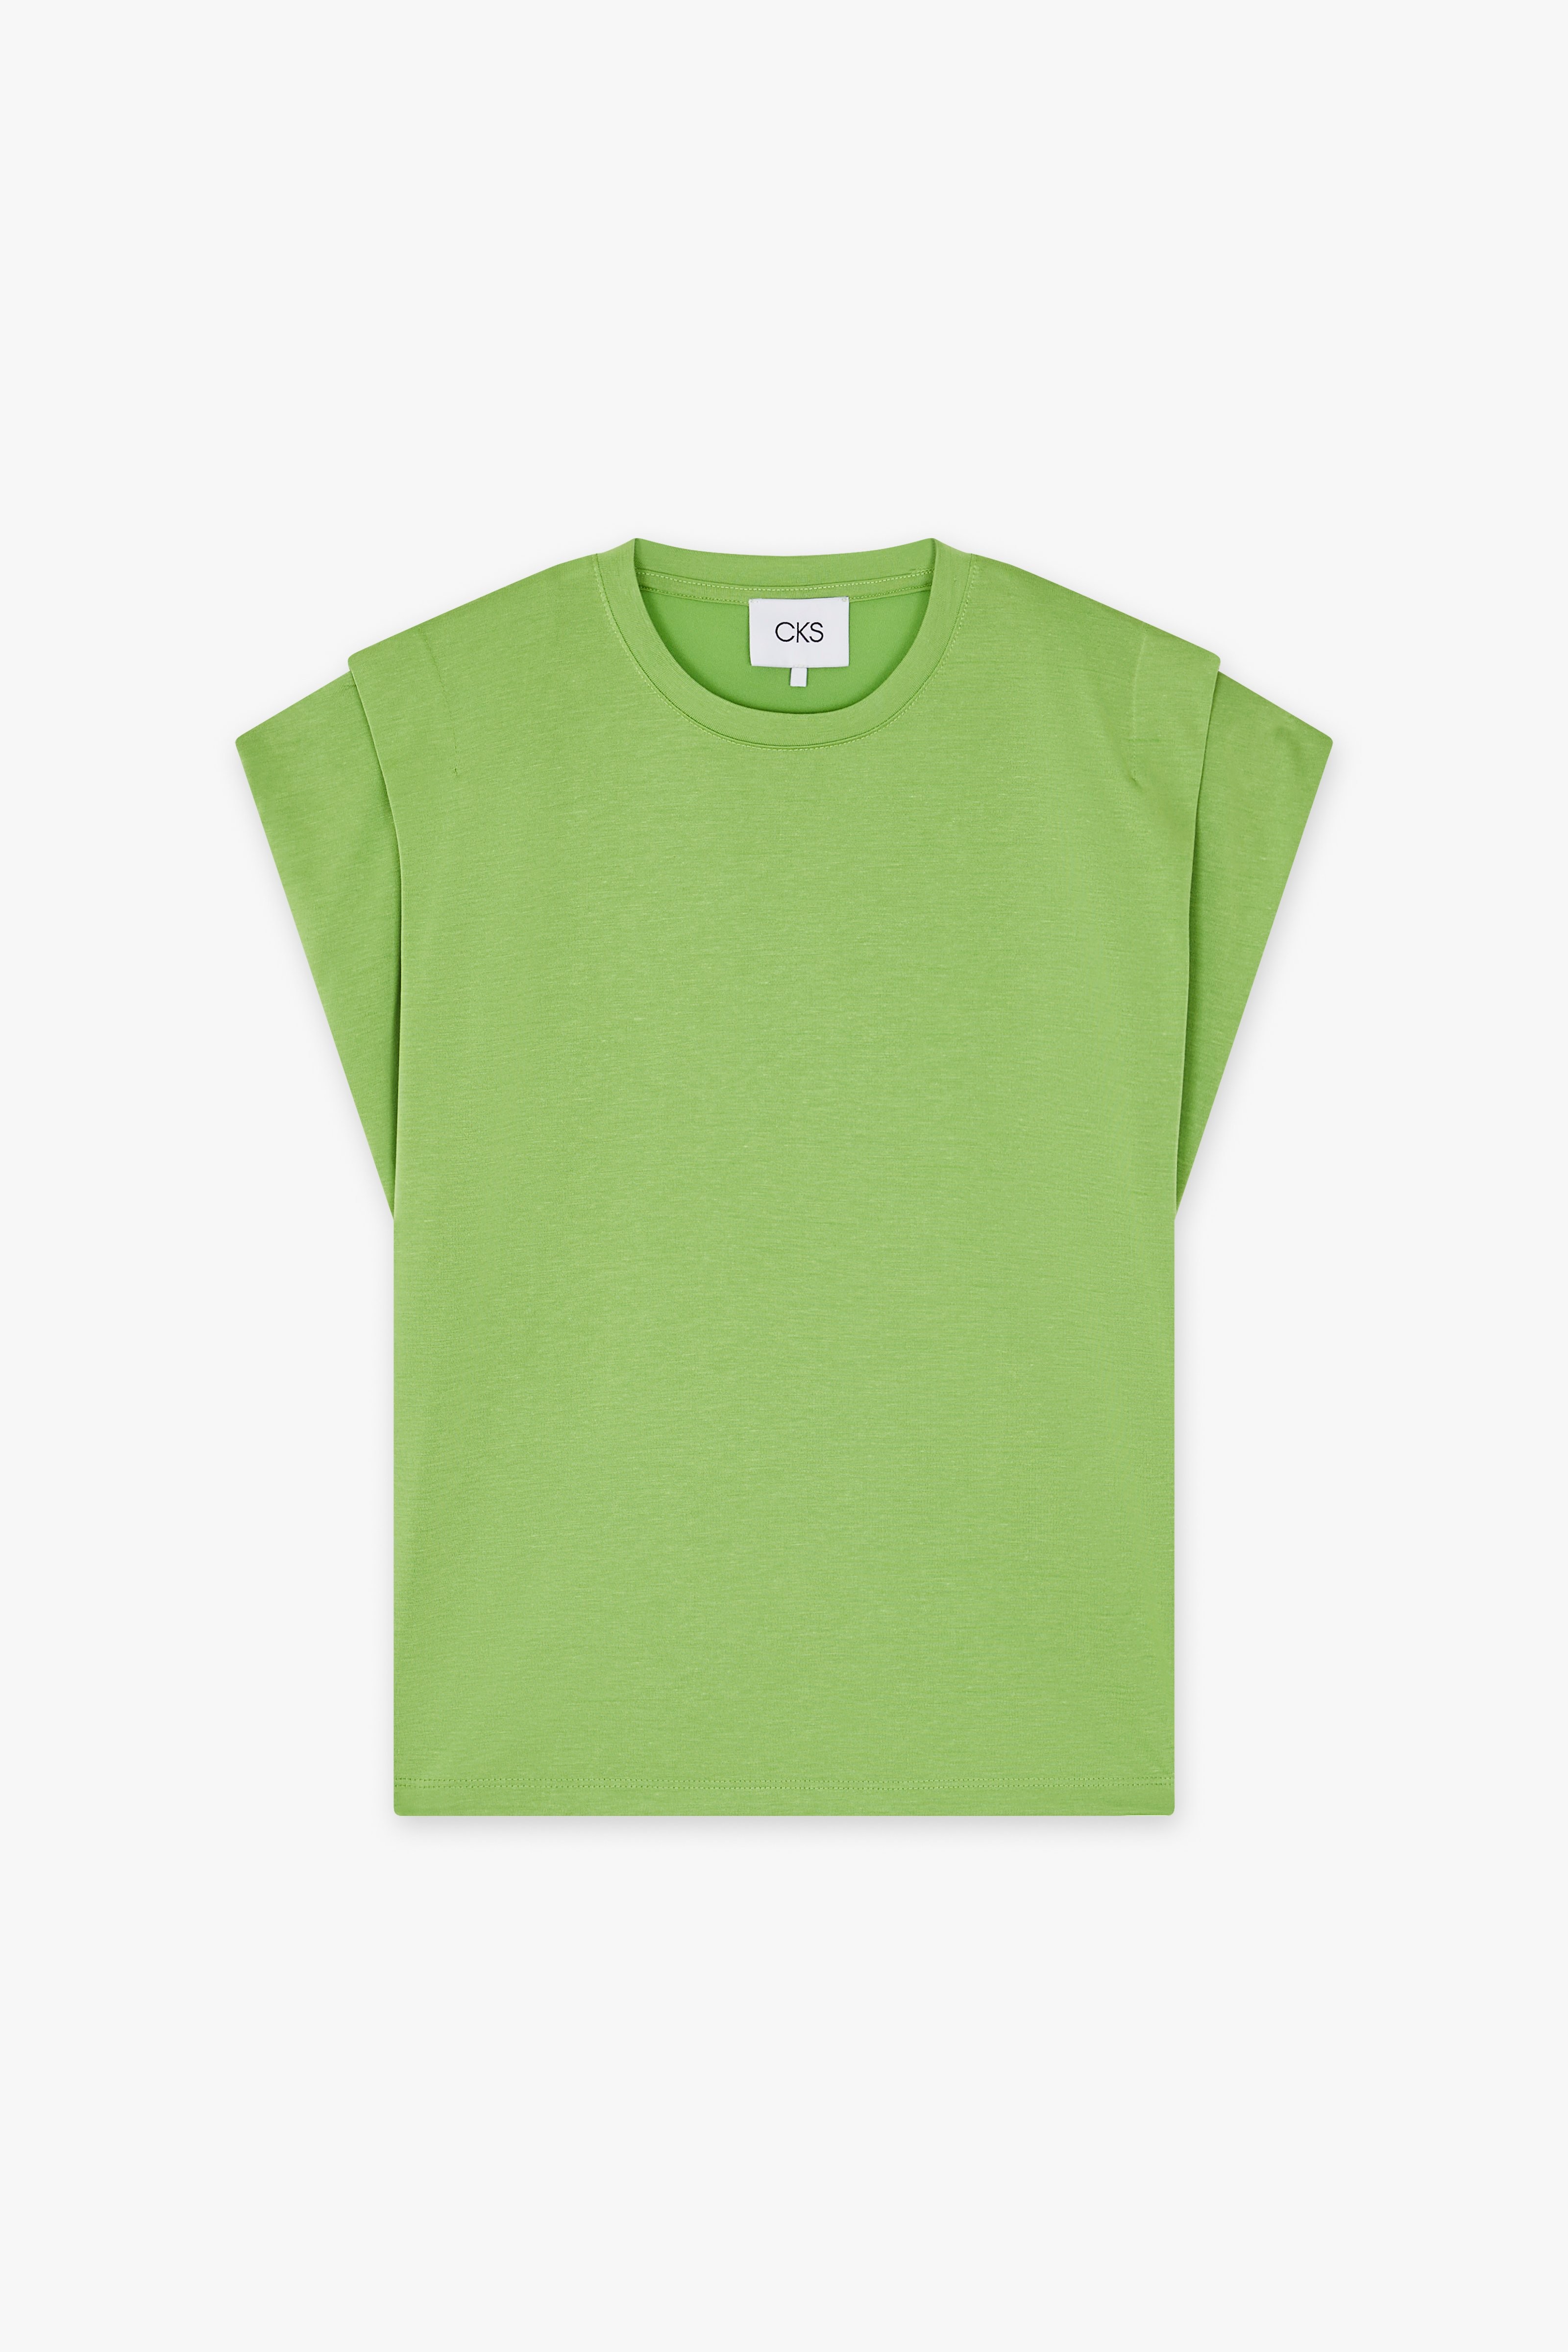 CKS Dames - PAMINA - T-Shirt Kurzarm - Grün